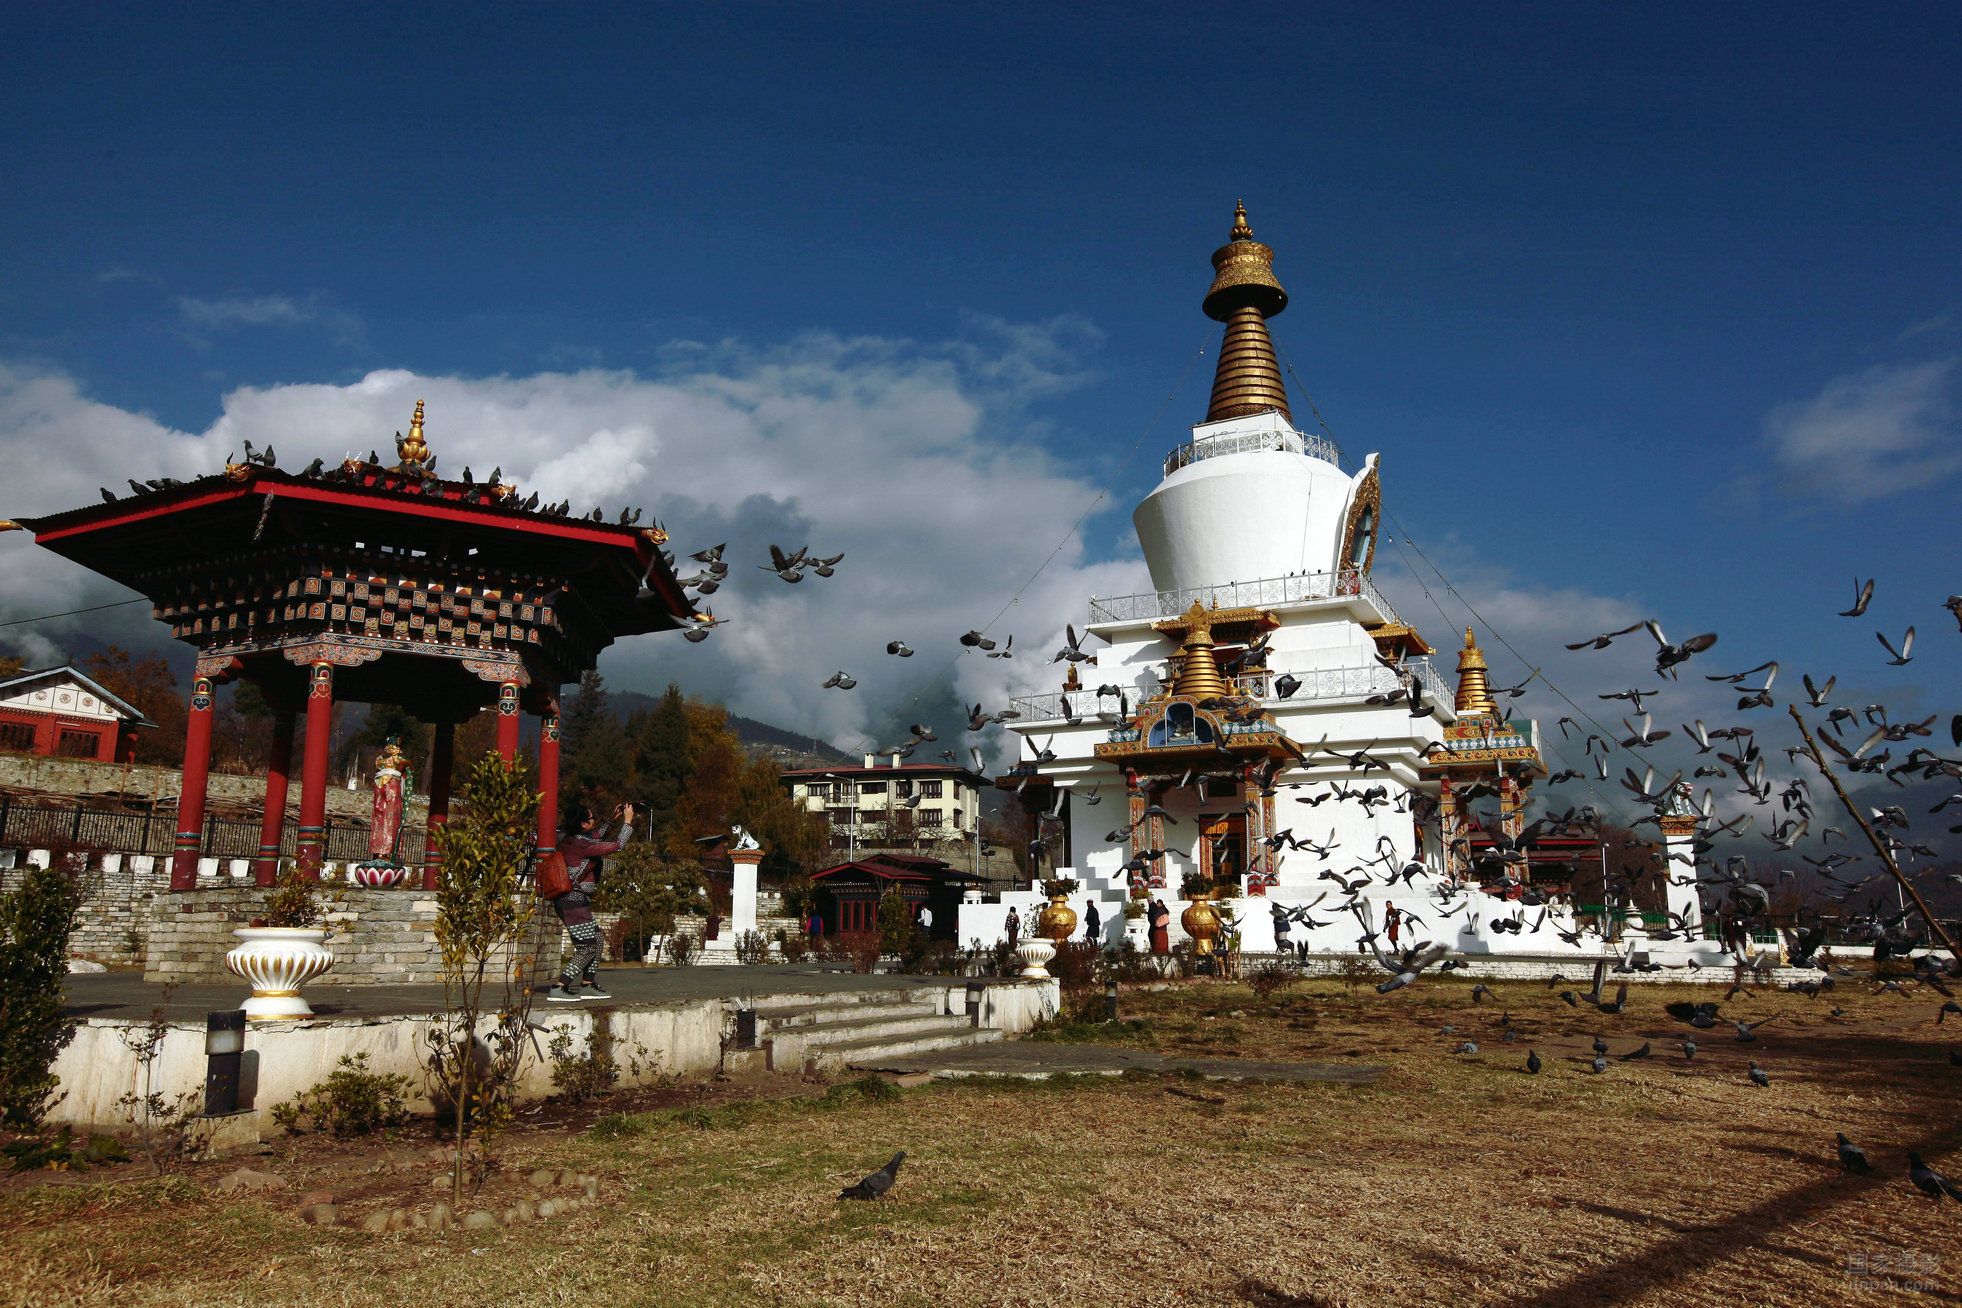 不丹国简介 国家图片